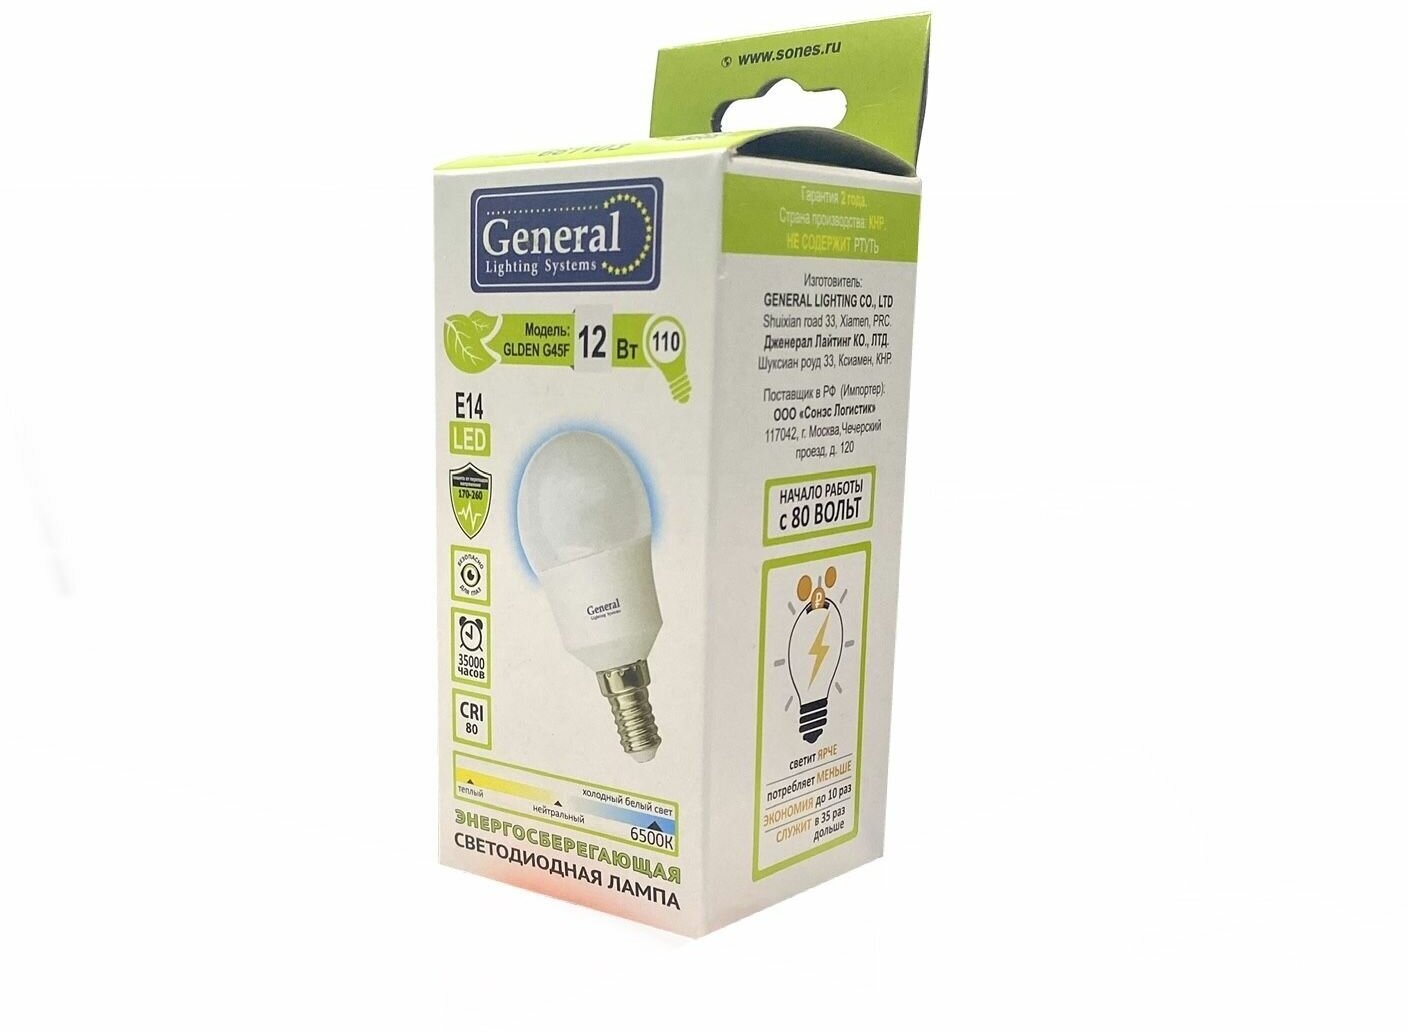 Лампа светодиодная GLDEN-G45F-12-230-E14-6500К General (4шт.)